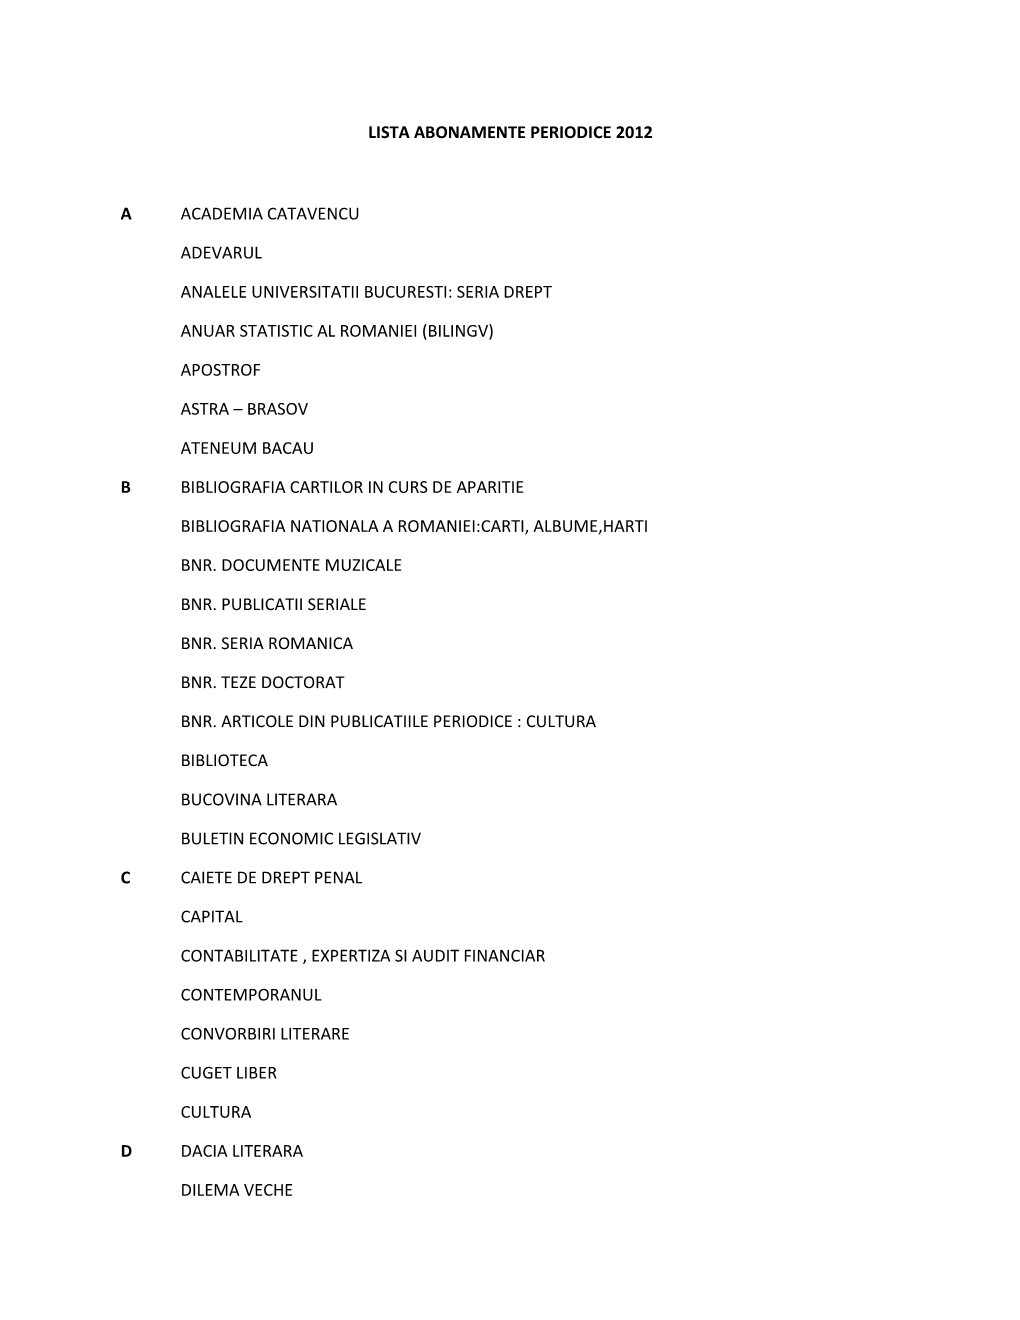 Lista Abonamente Periodice 2012 a Academia Catavencu